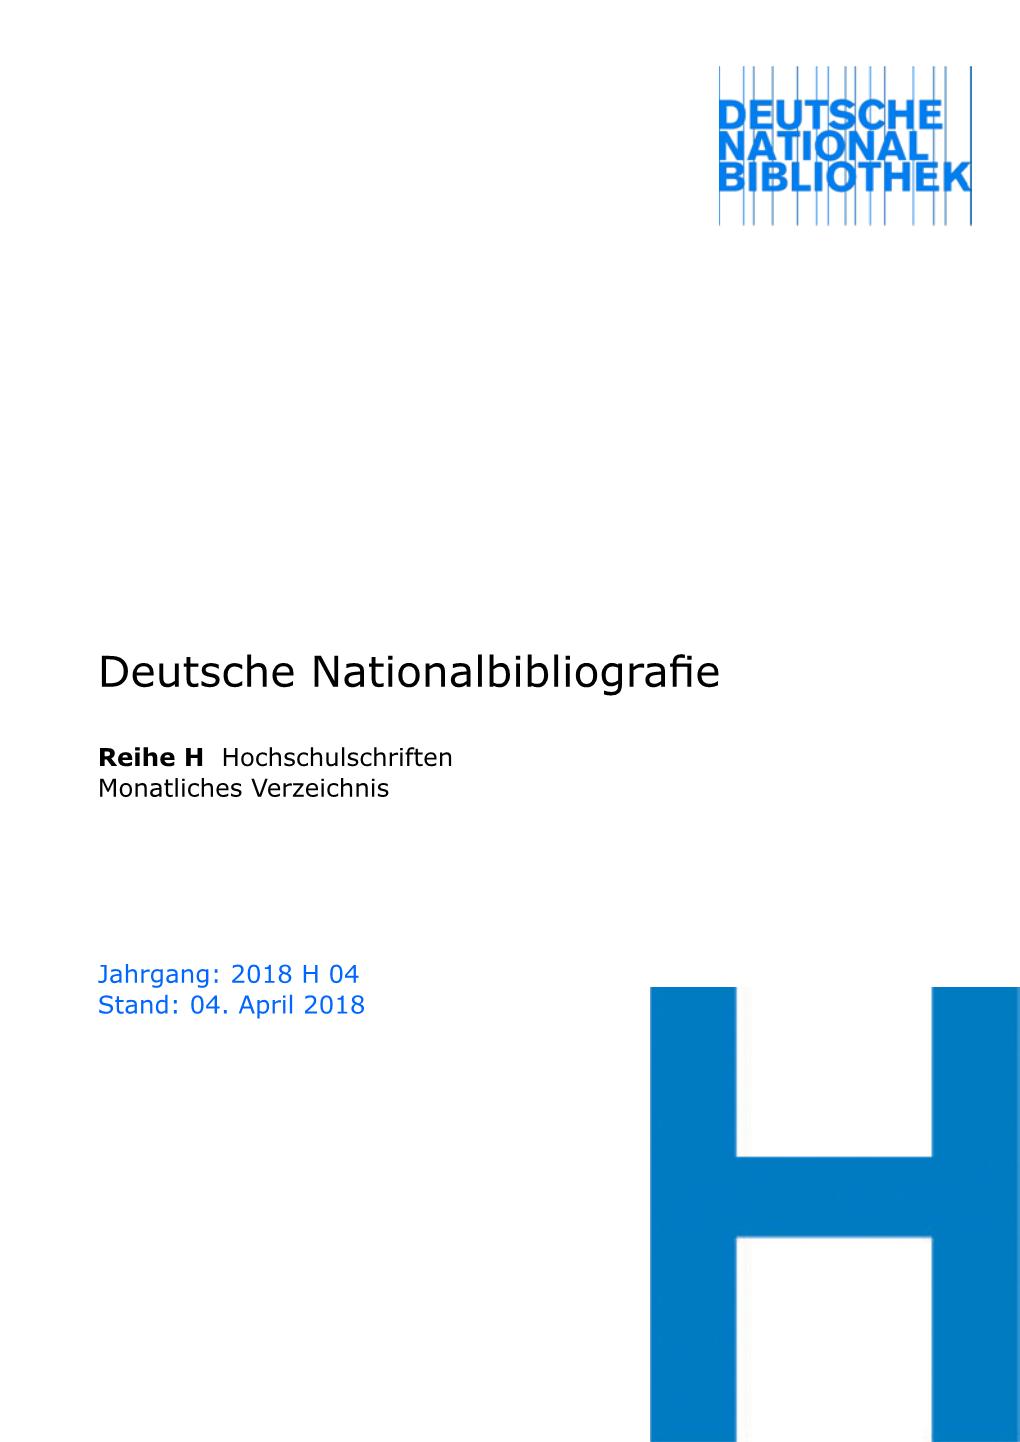 Deutsche Nationalbibliografie 2018 H 04